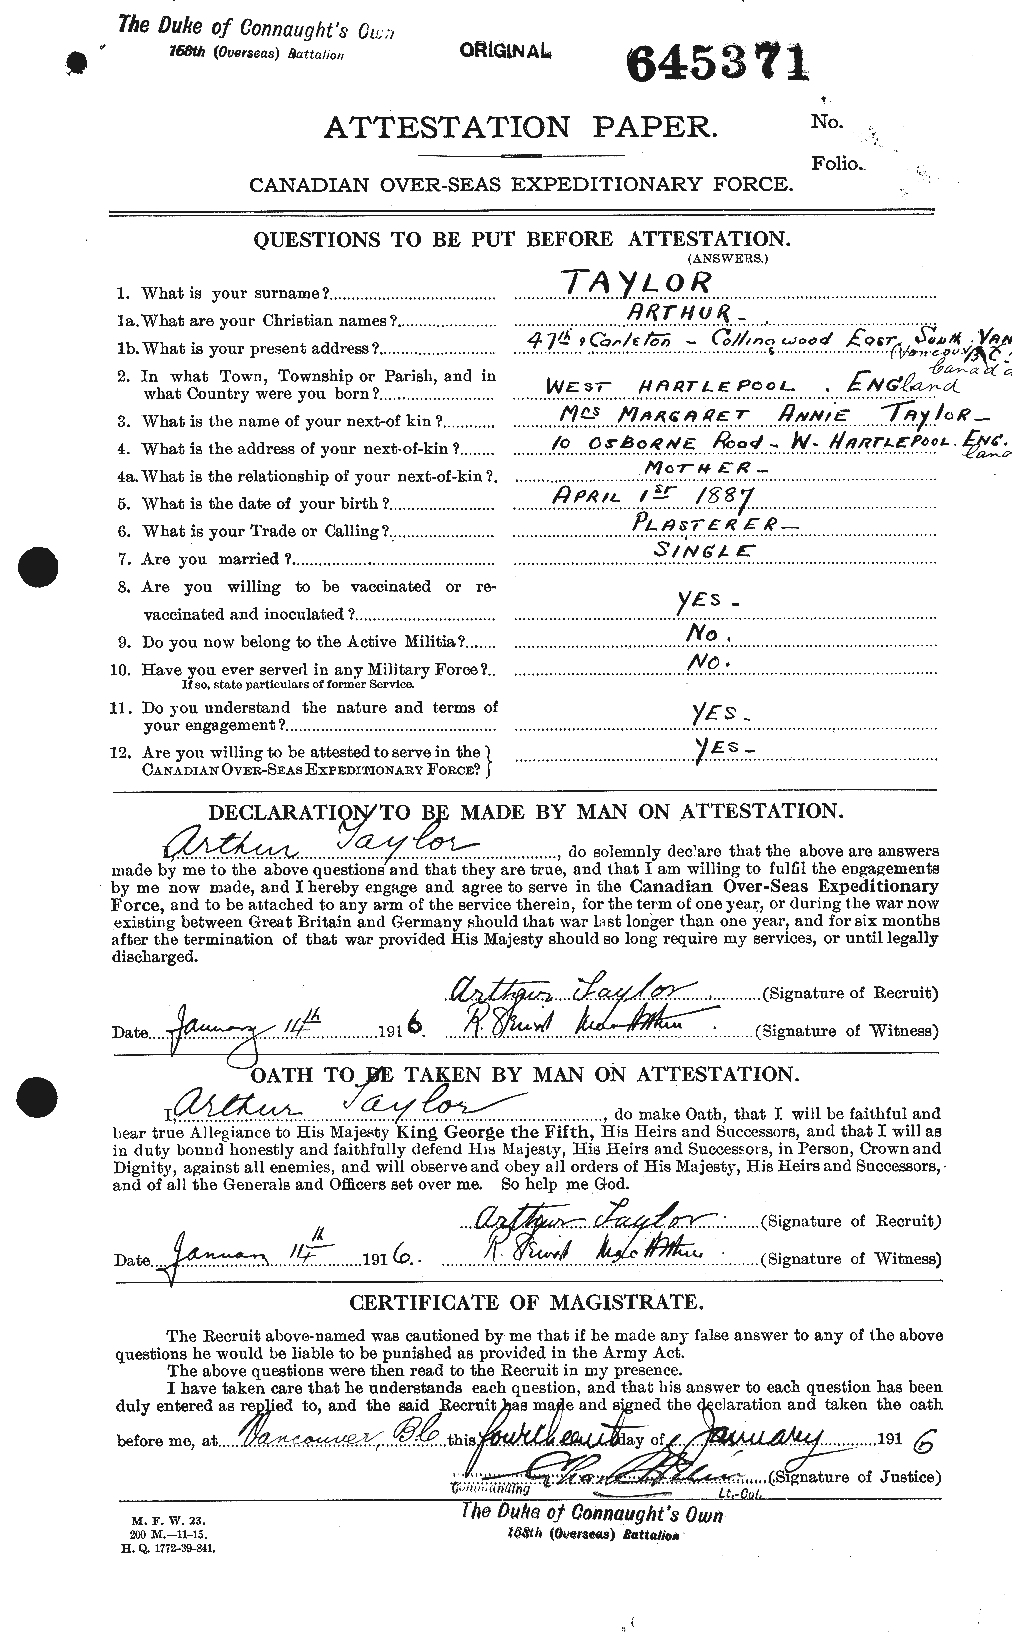 Dossiers du Personnel de la Première Guerre mondiale - CEC 626695a